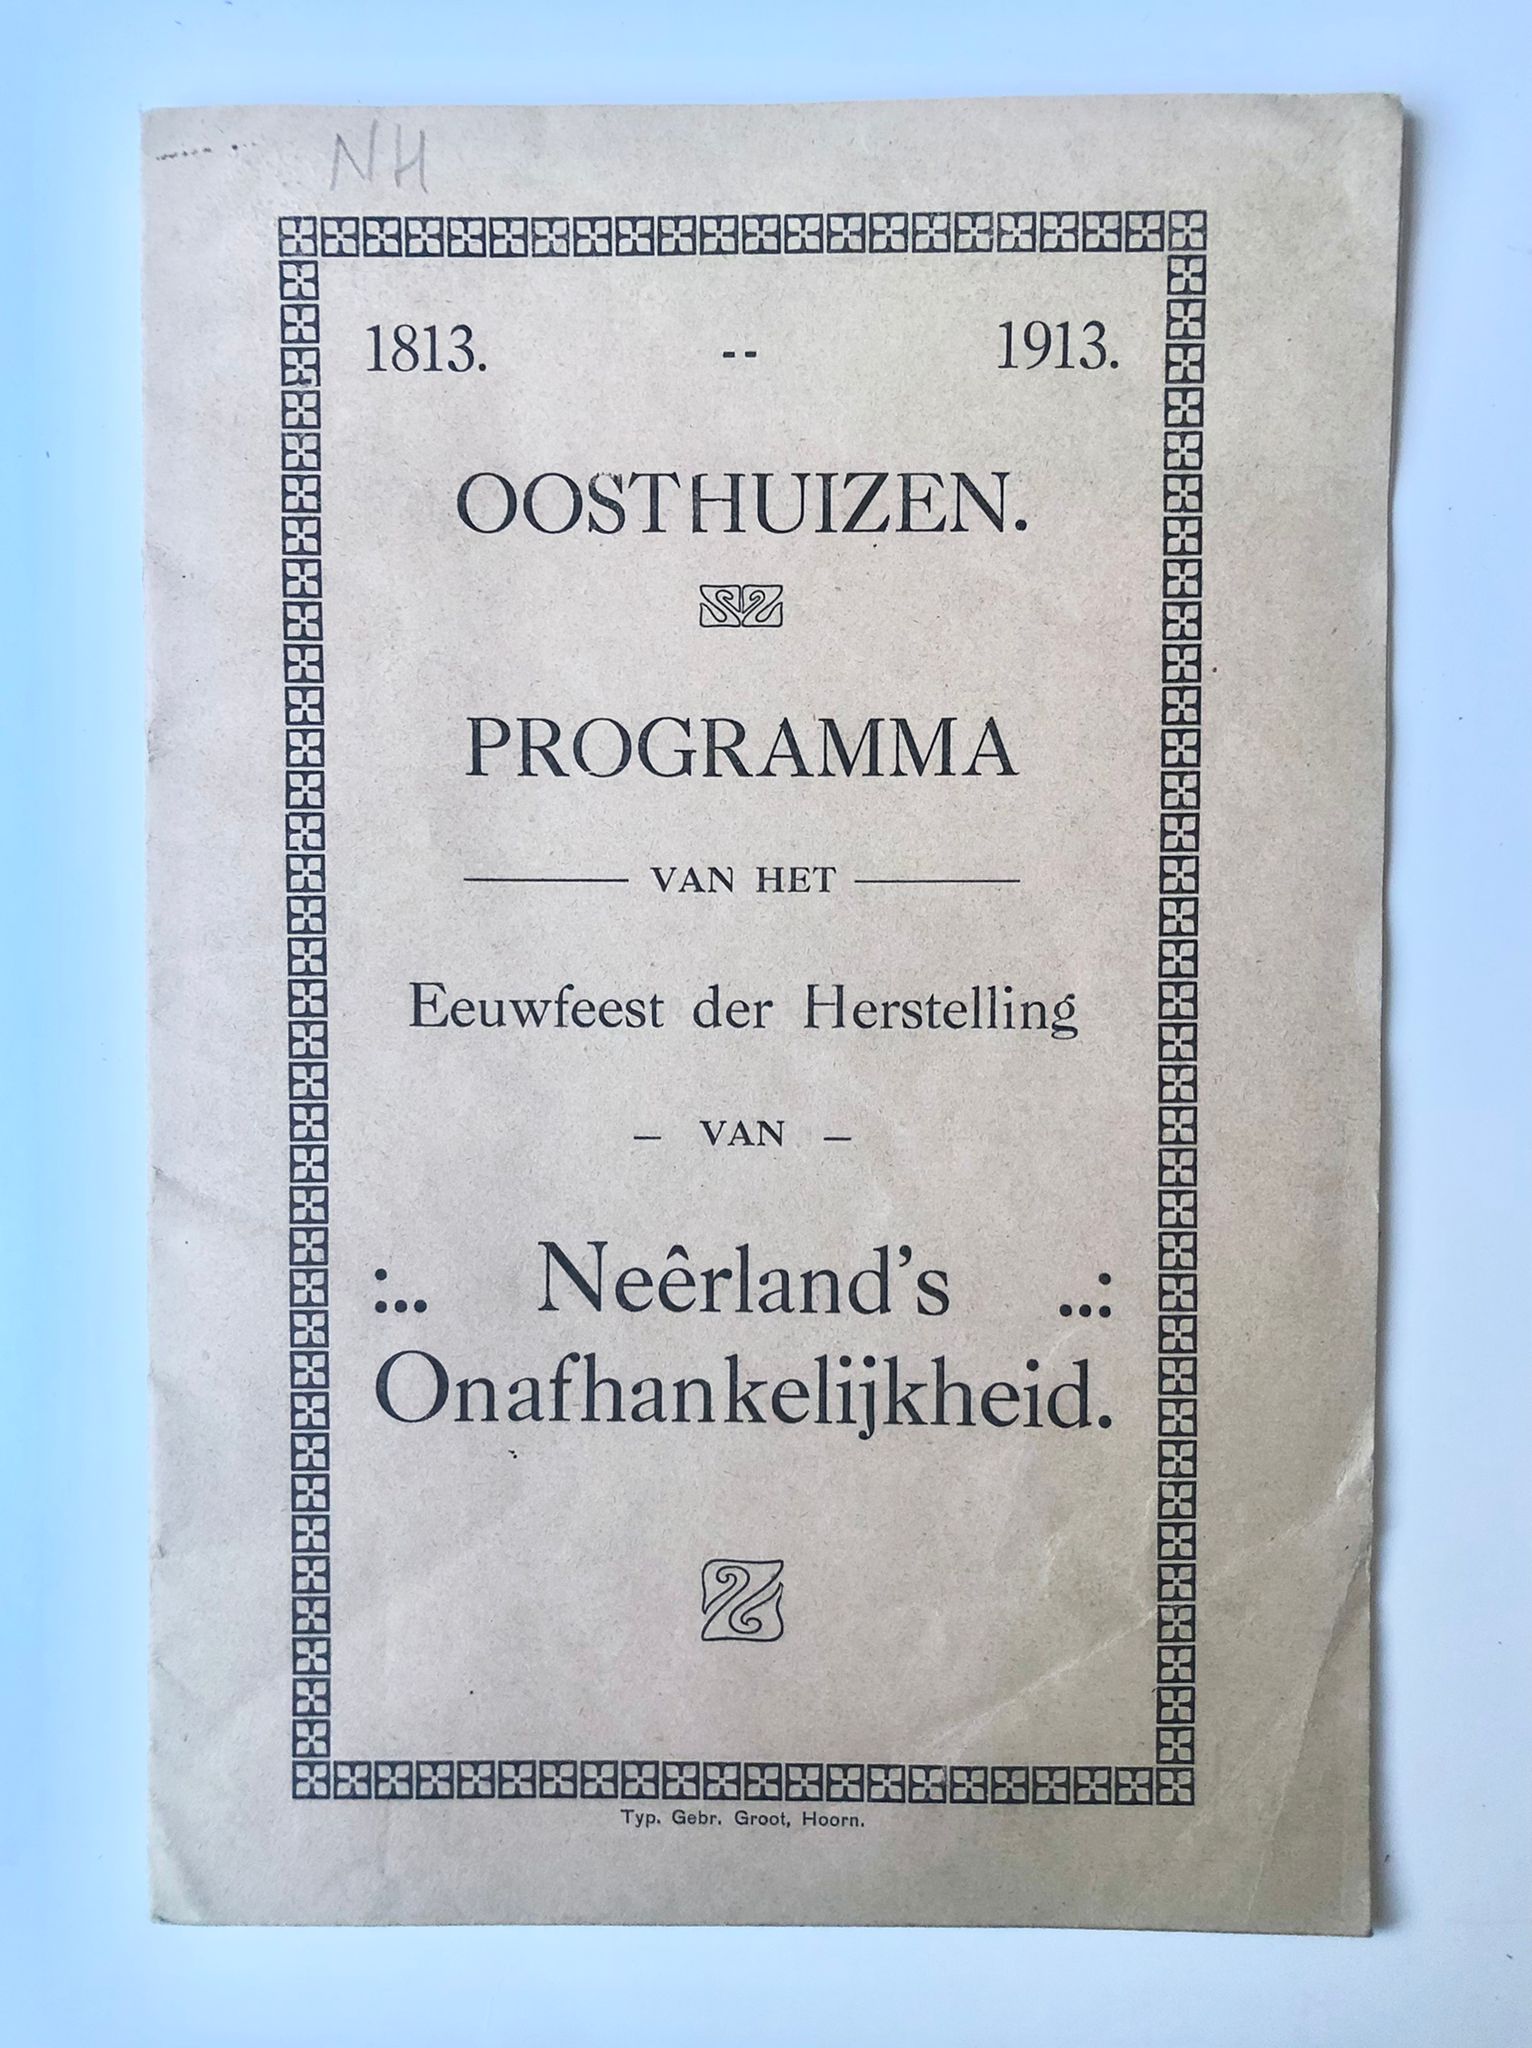 [Festivity program Oosthuizen, Noord-Holland 1913] Oosthuizen. Programma van het Eeuwfeest der Herstelling van Neêrland’s Onafhankelijkheid. 1813-1913. 8 pp.